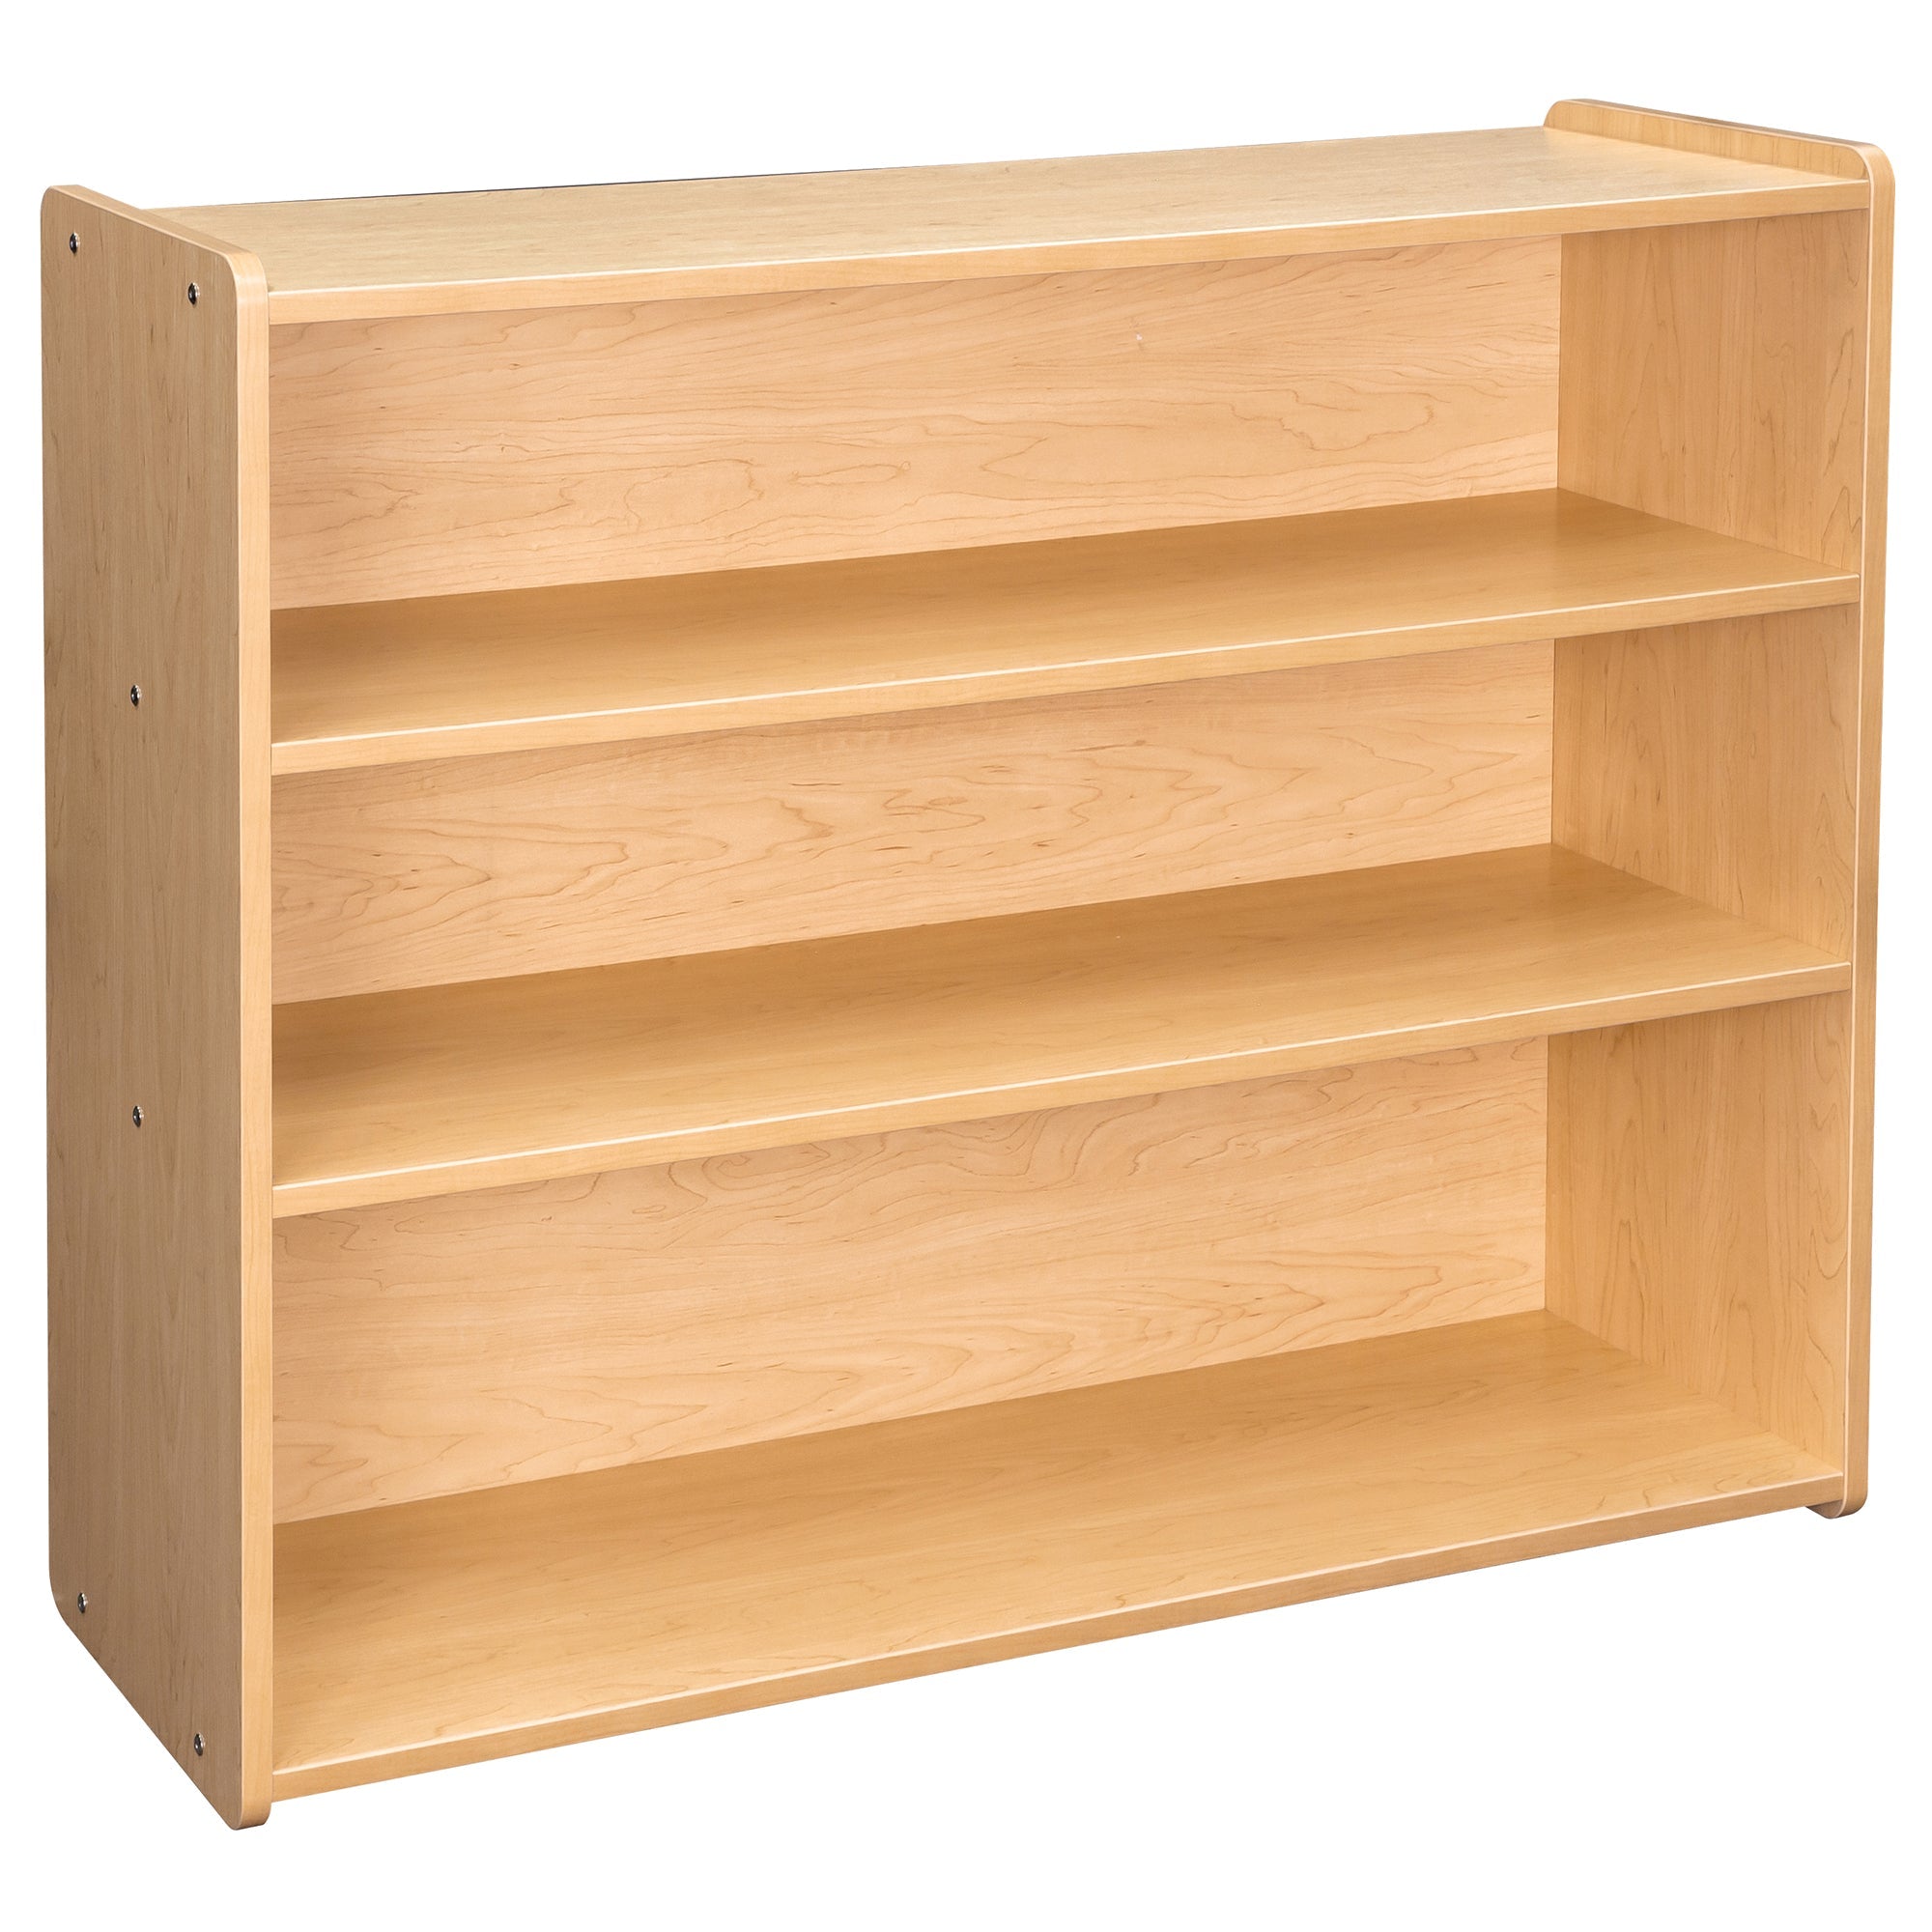 School Age Shelf Storage 46" Wide